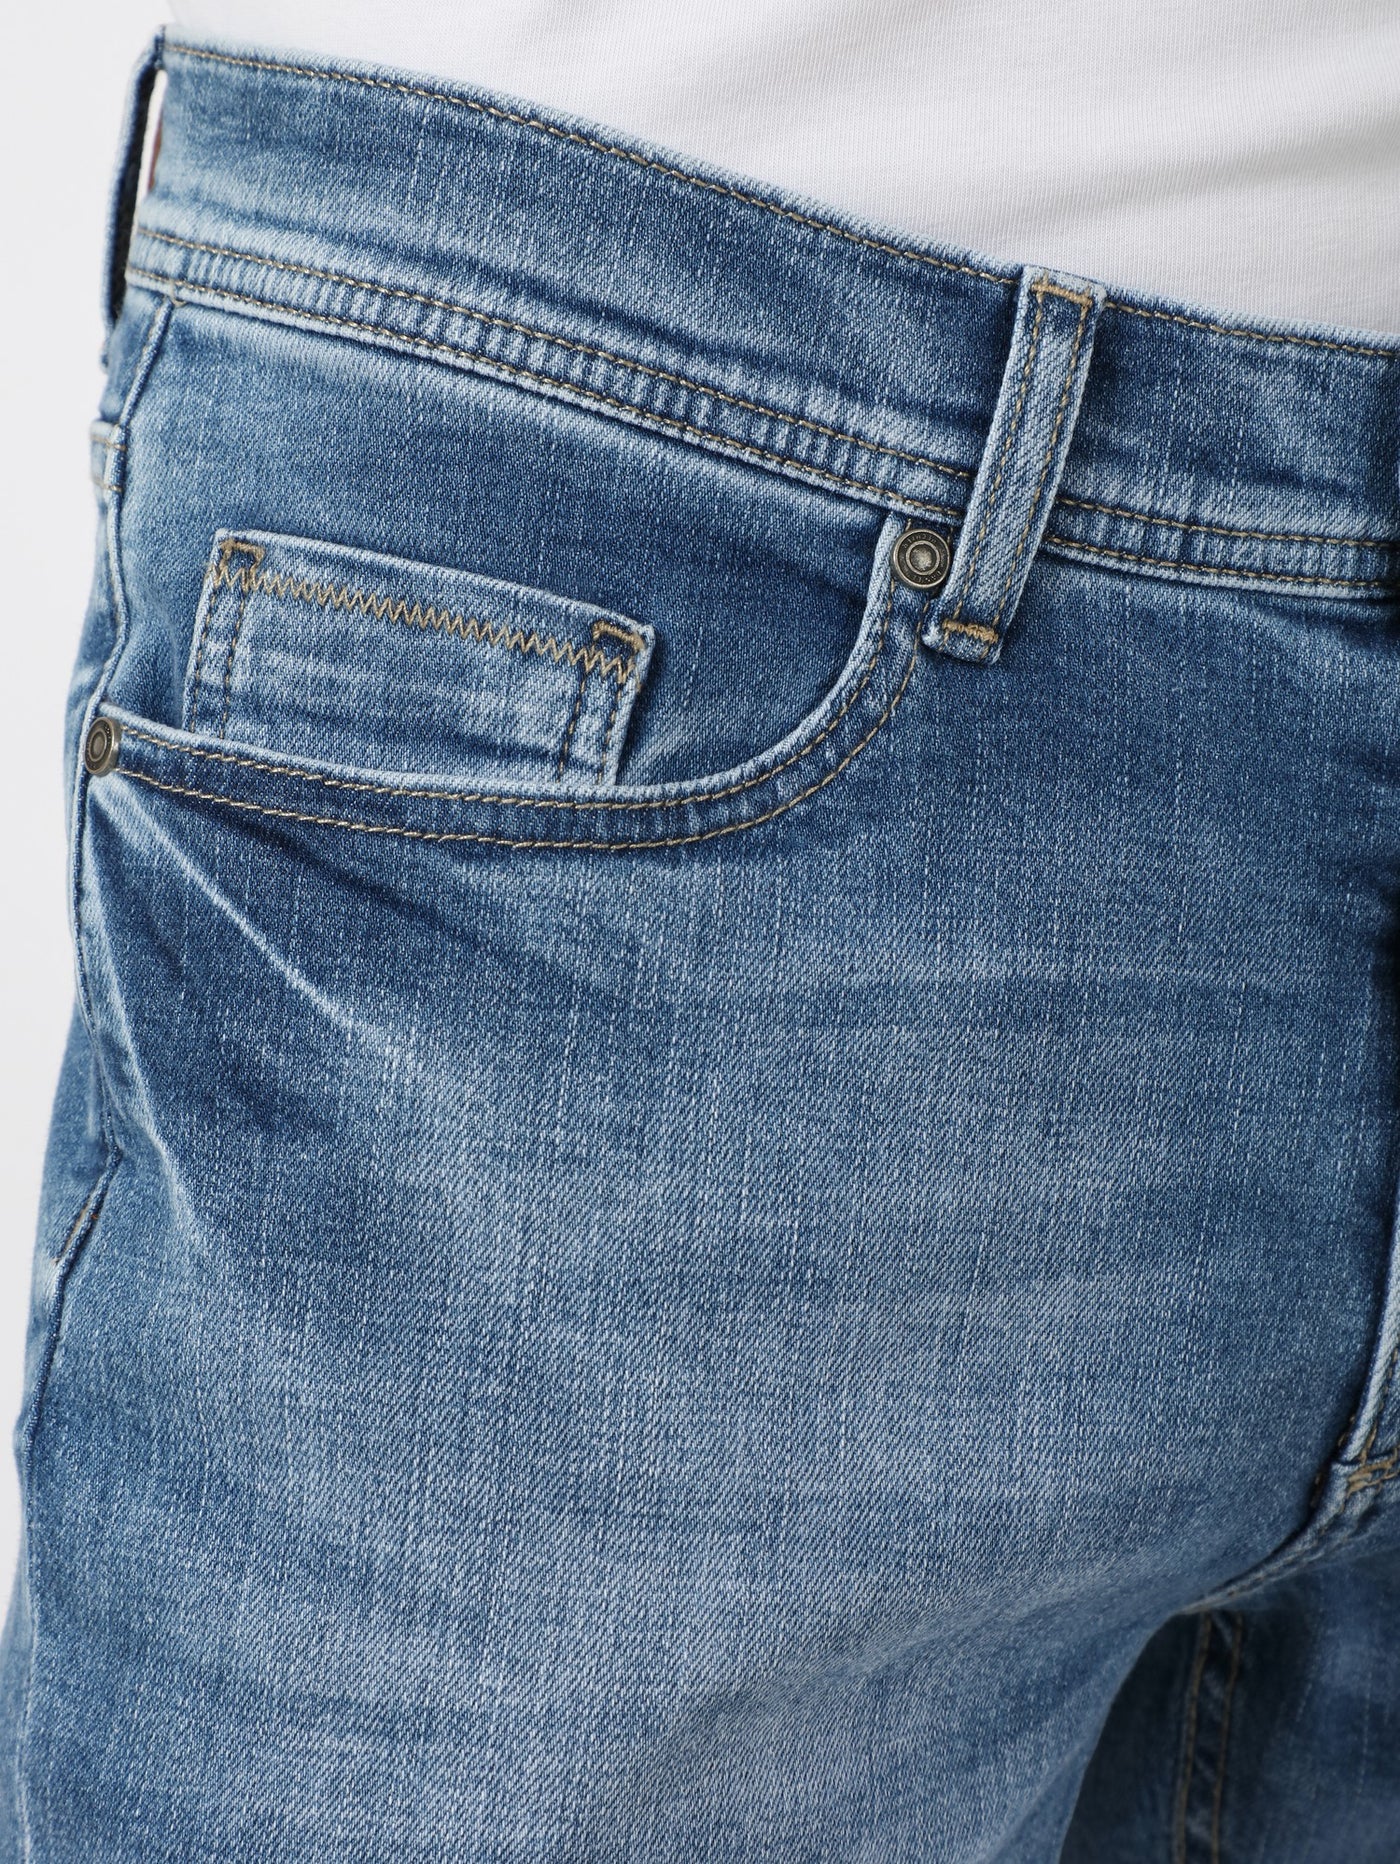 Denim Pants - Modern Fit - Washed Effect